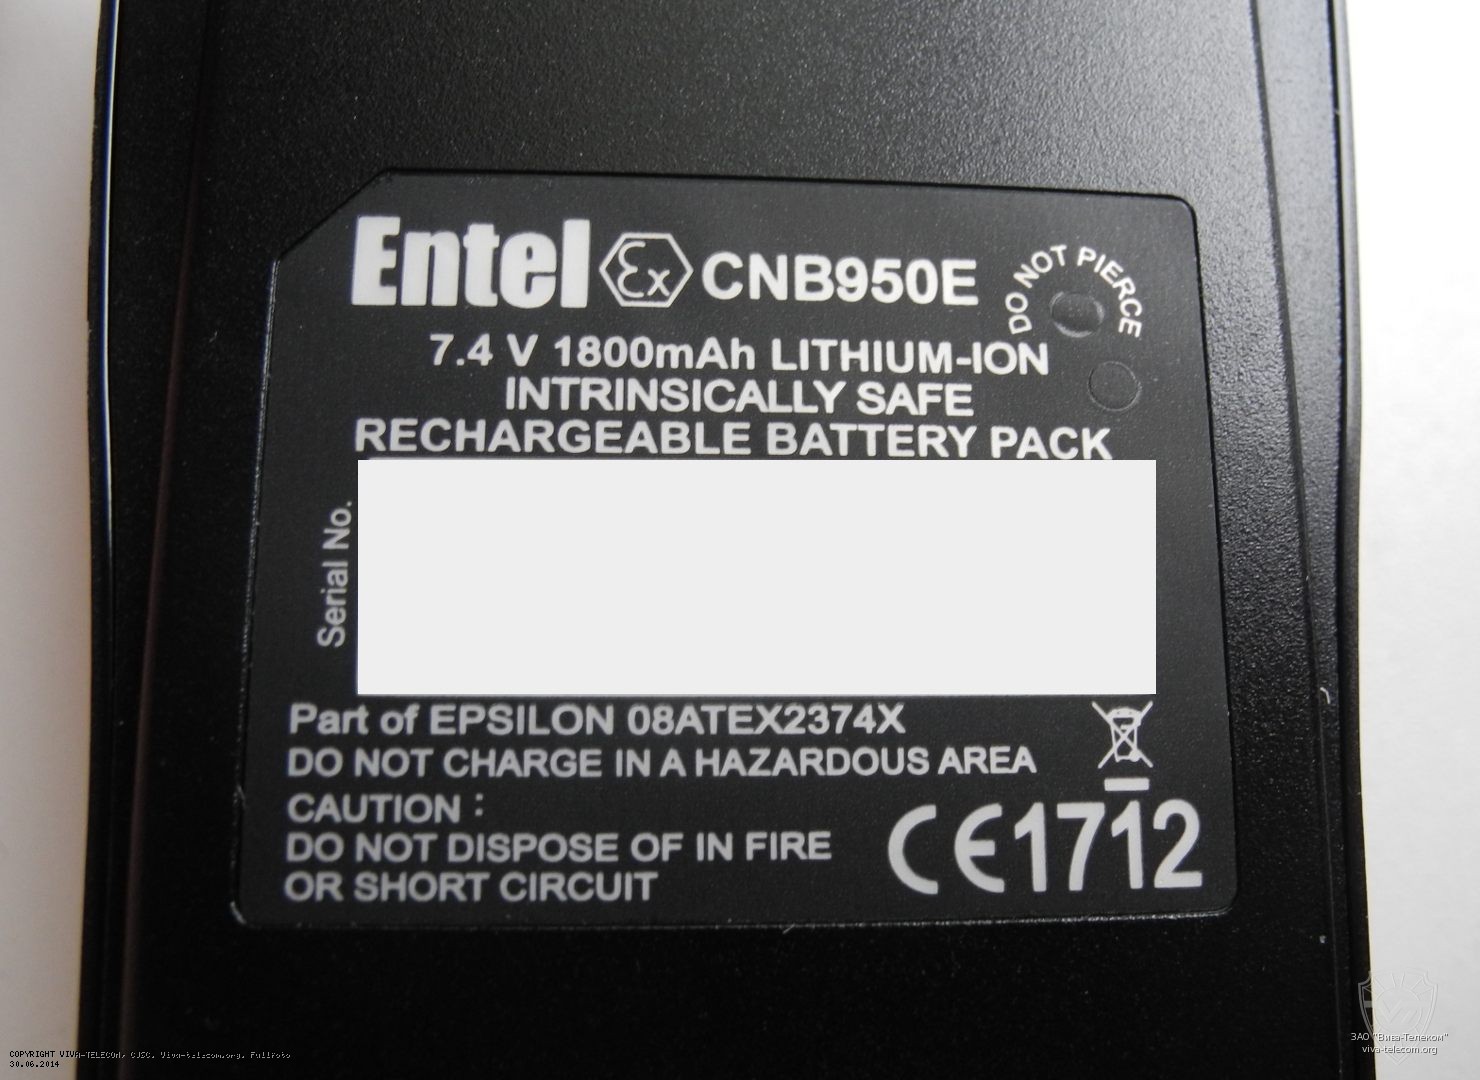    Entel CNB-950